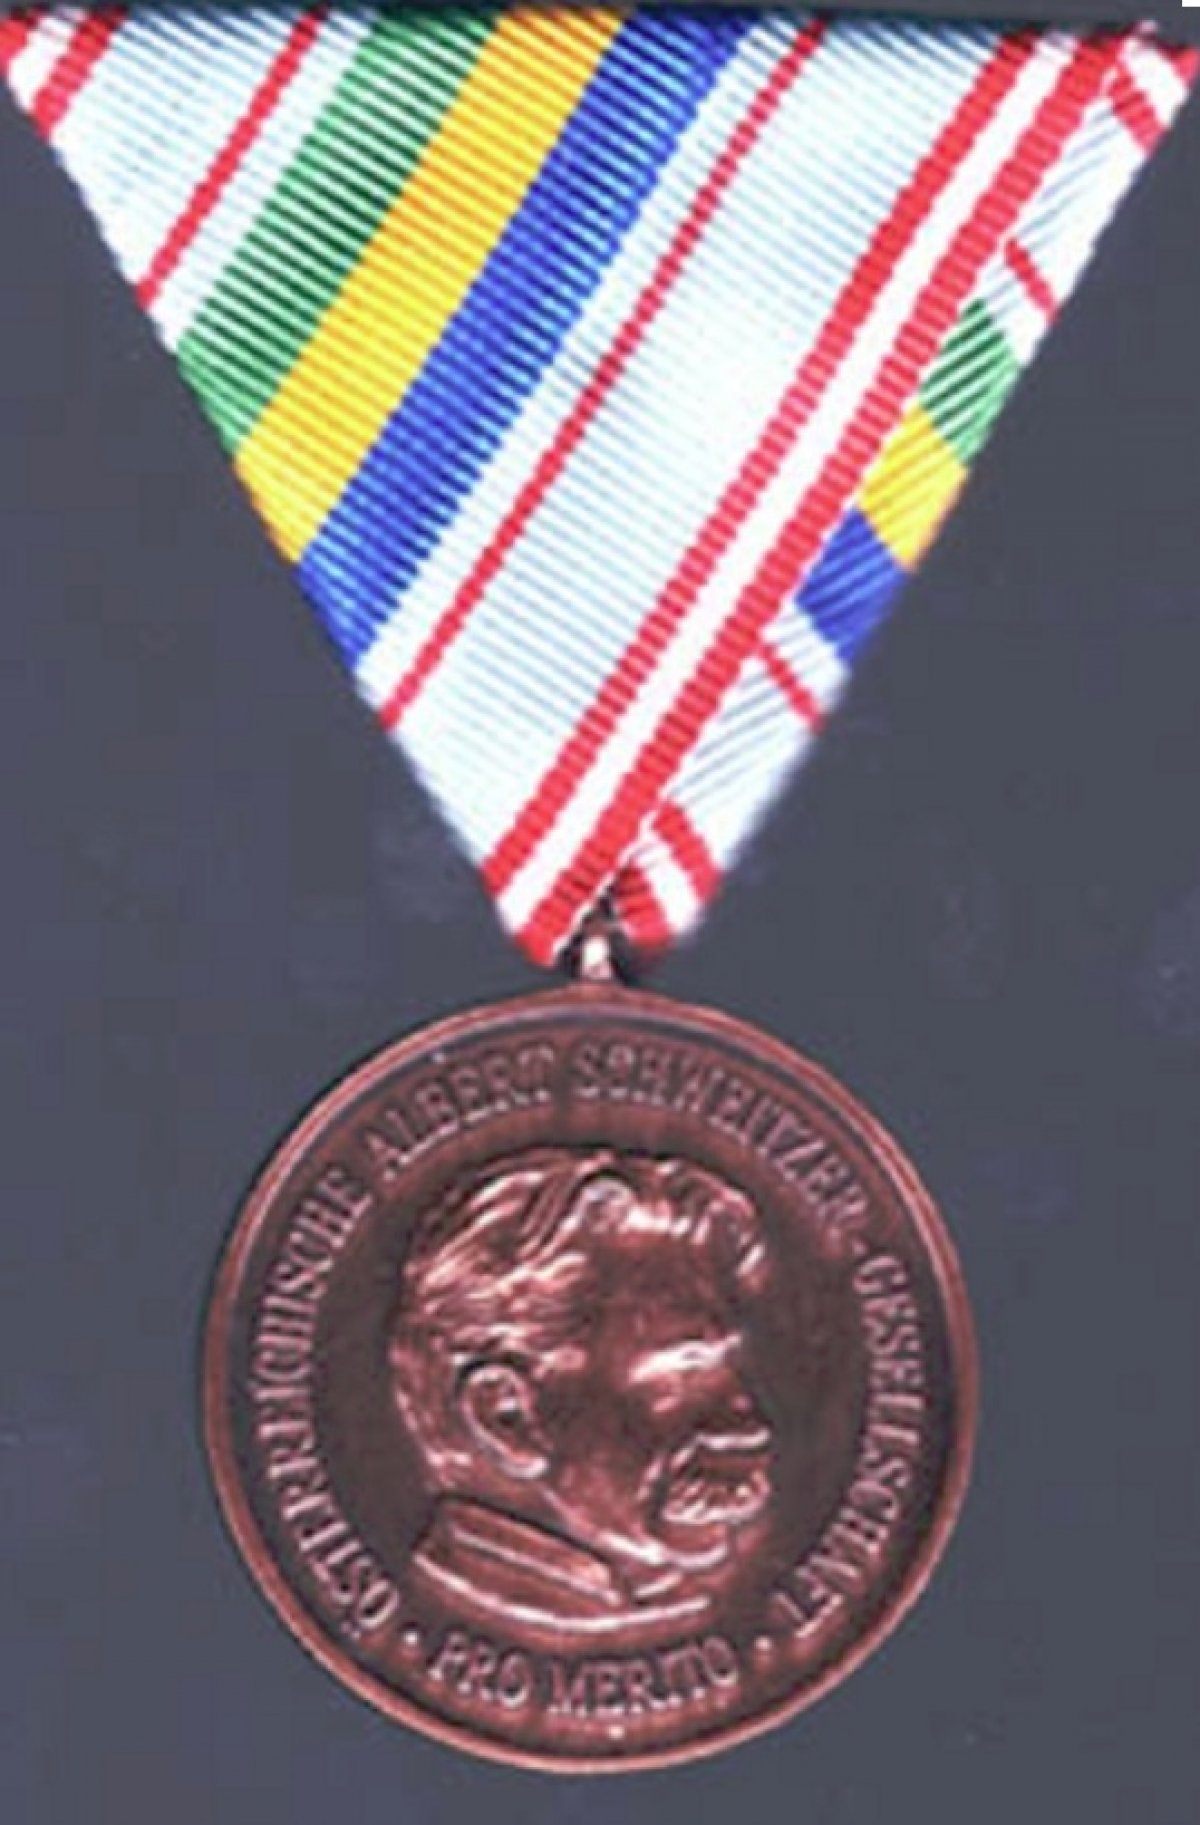 23 ноября ректор НГЛУ профессор Б.А. Жигалев был награжден медалью Австрийского Общества им. Альберта Швейцера